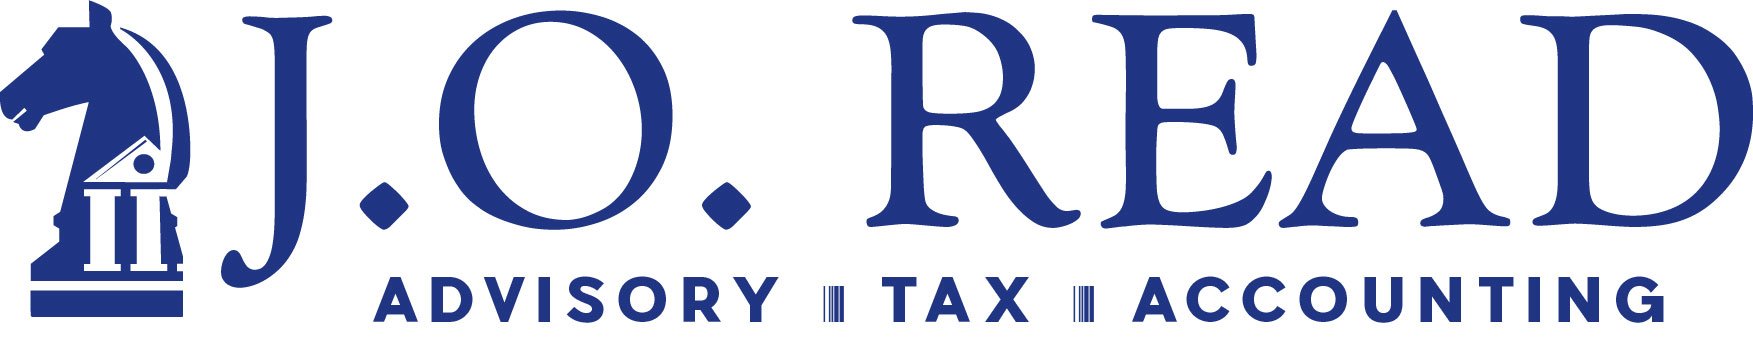 Advisory - Tax - Accounting